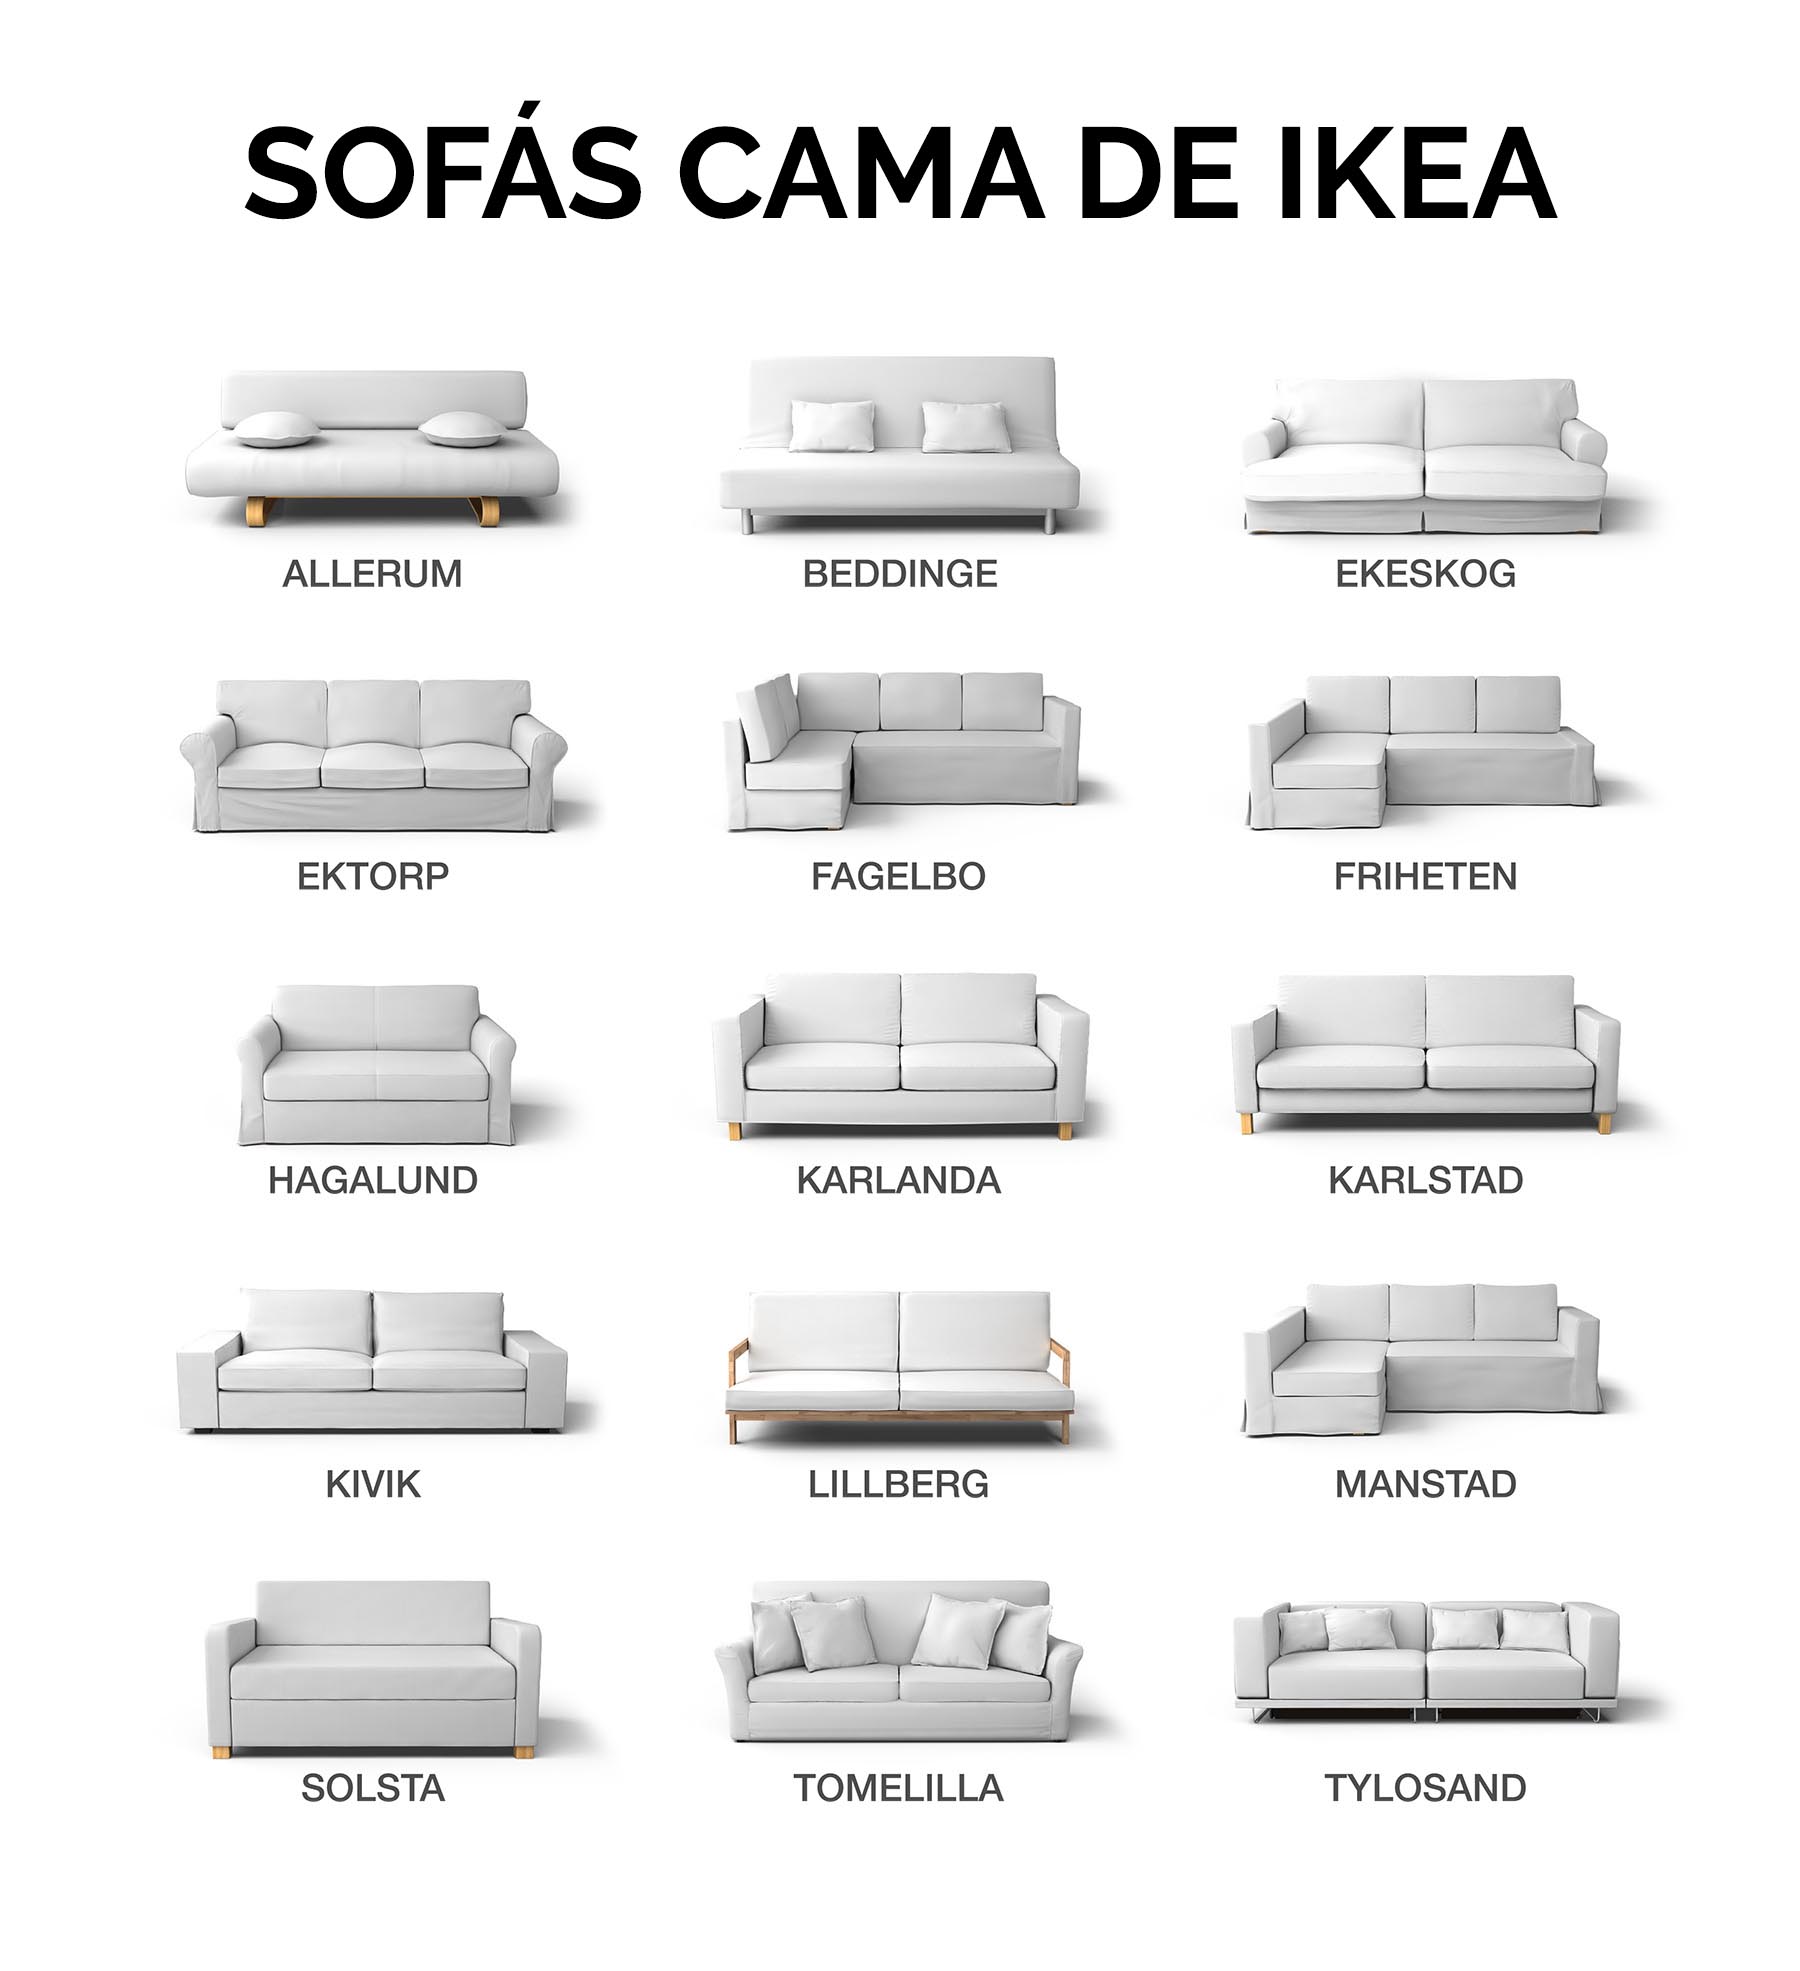 Qué modelo de sofá cama IKEA tengo? - Identifica tu sofá cama IKEA | Blog  Comfort Works - Inspiración y decoración